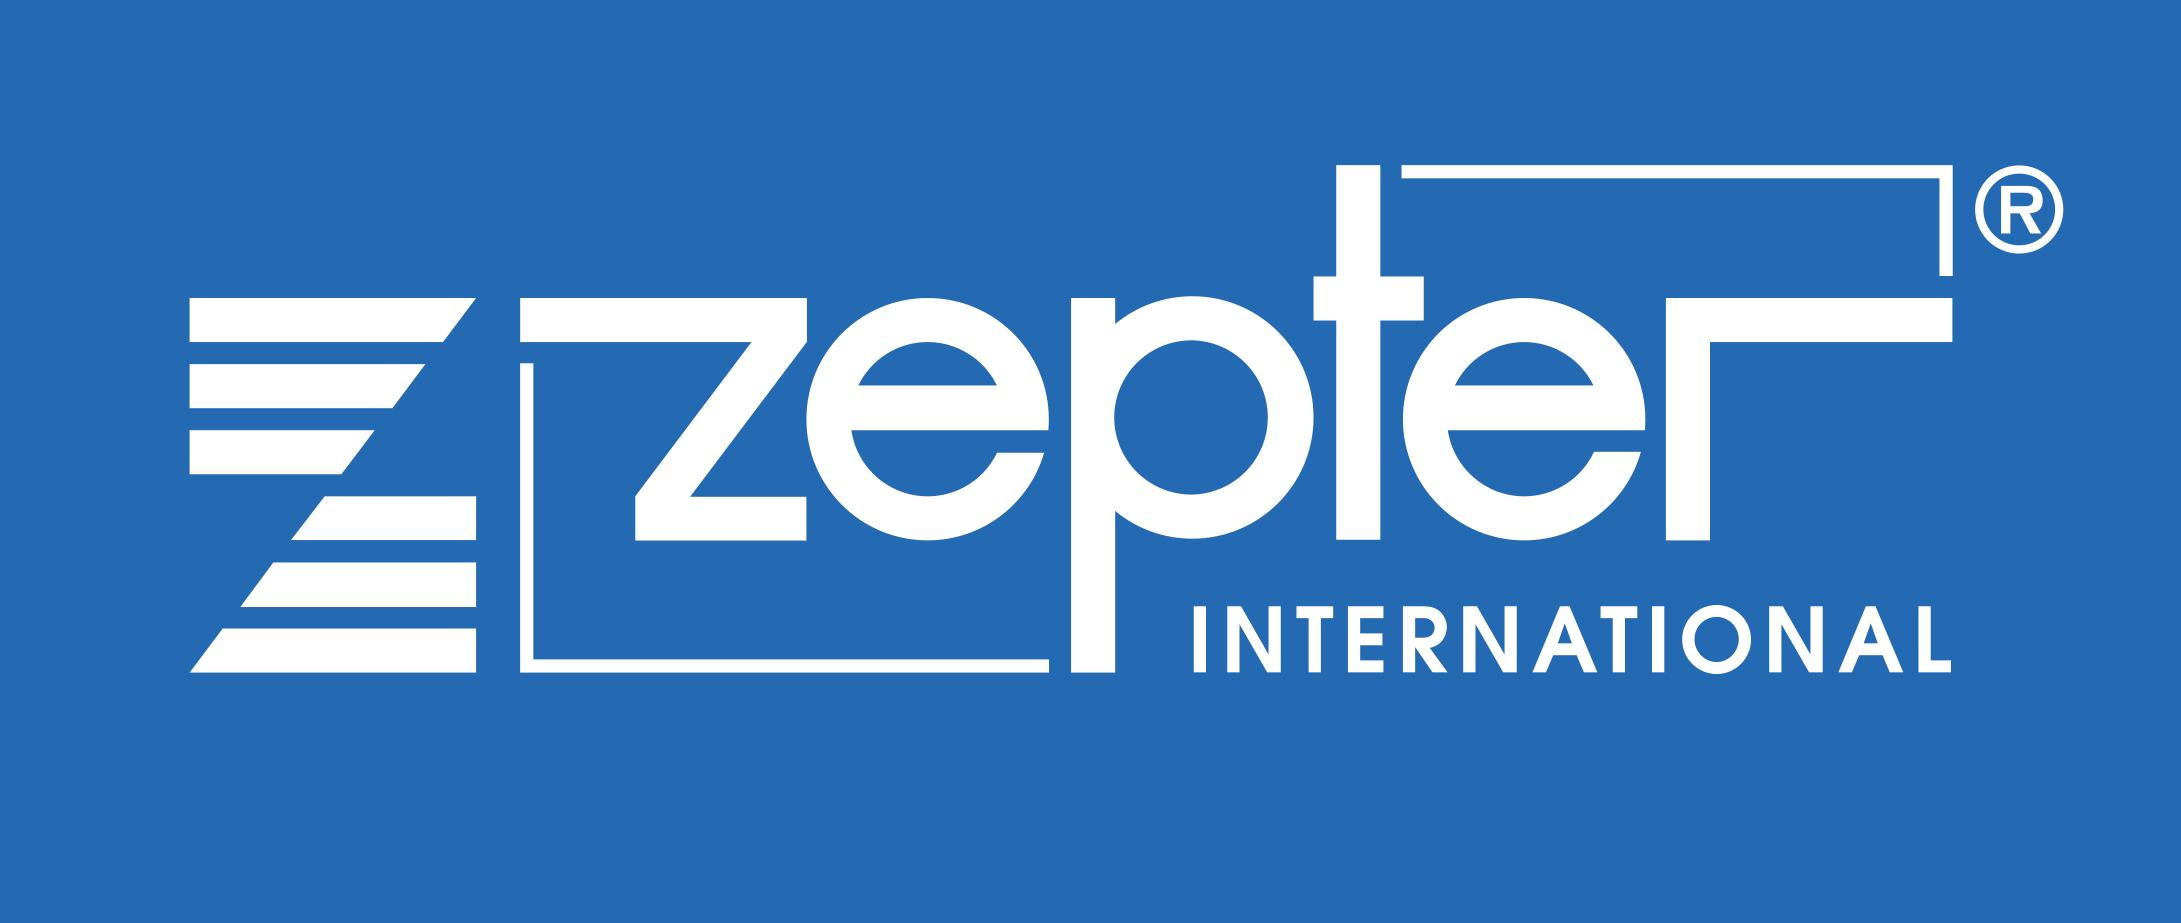 Пракса у компанији "Zepter International"